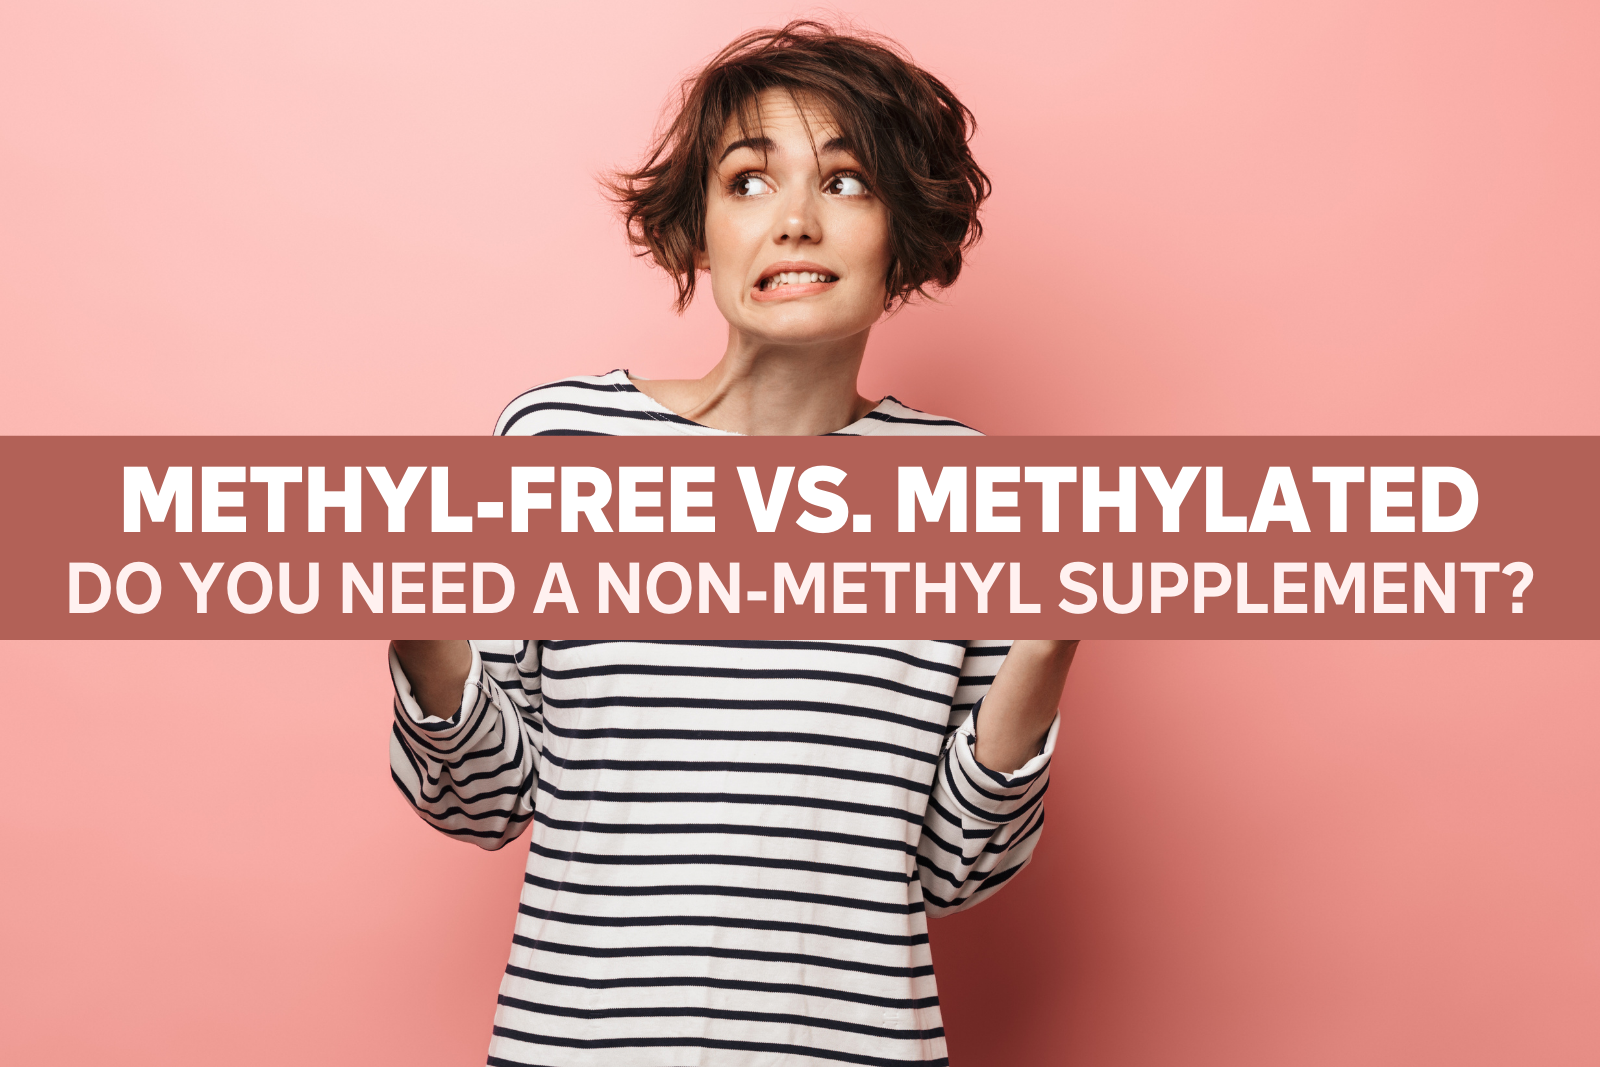 Methyl-Free vs. Methylated: What Are Methylated Vitamins?